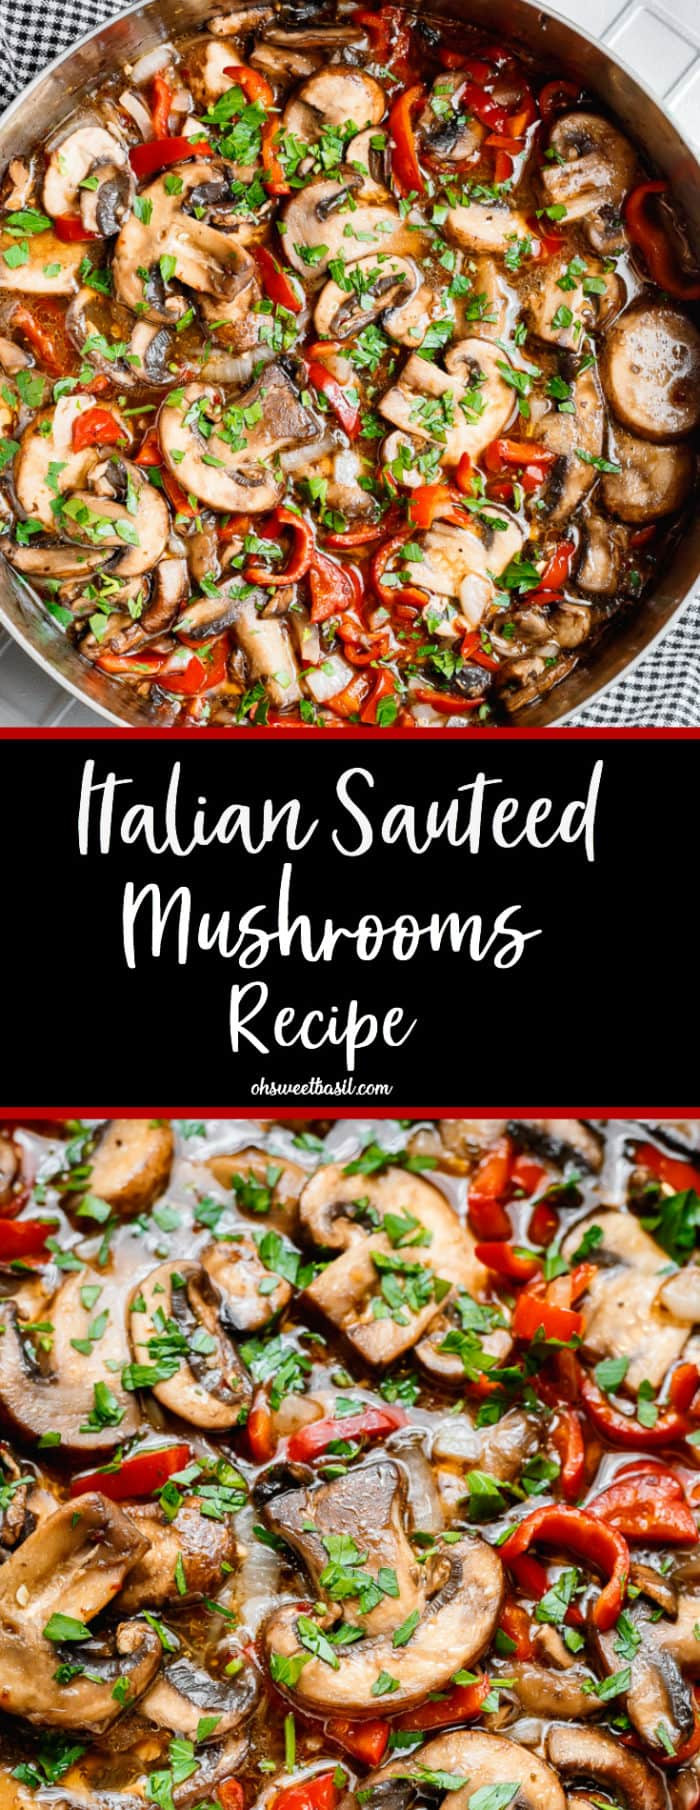 Quick Mushroom Recipes
 Italian Sauteed Mushrooms Recipe Oh Sweet Basil